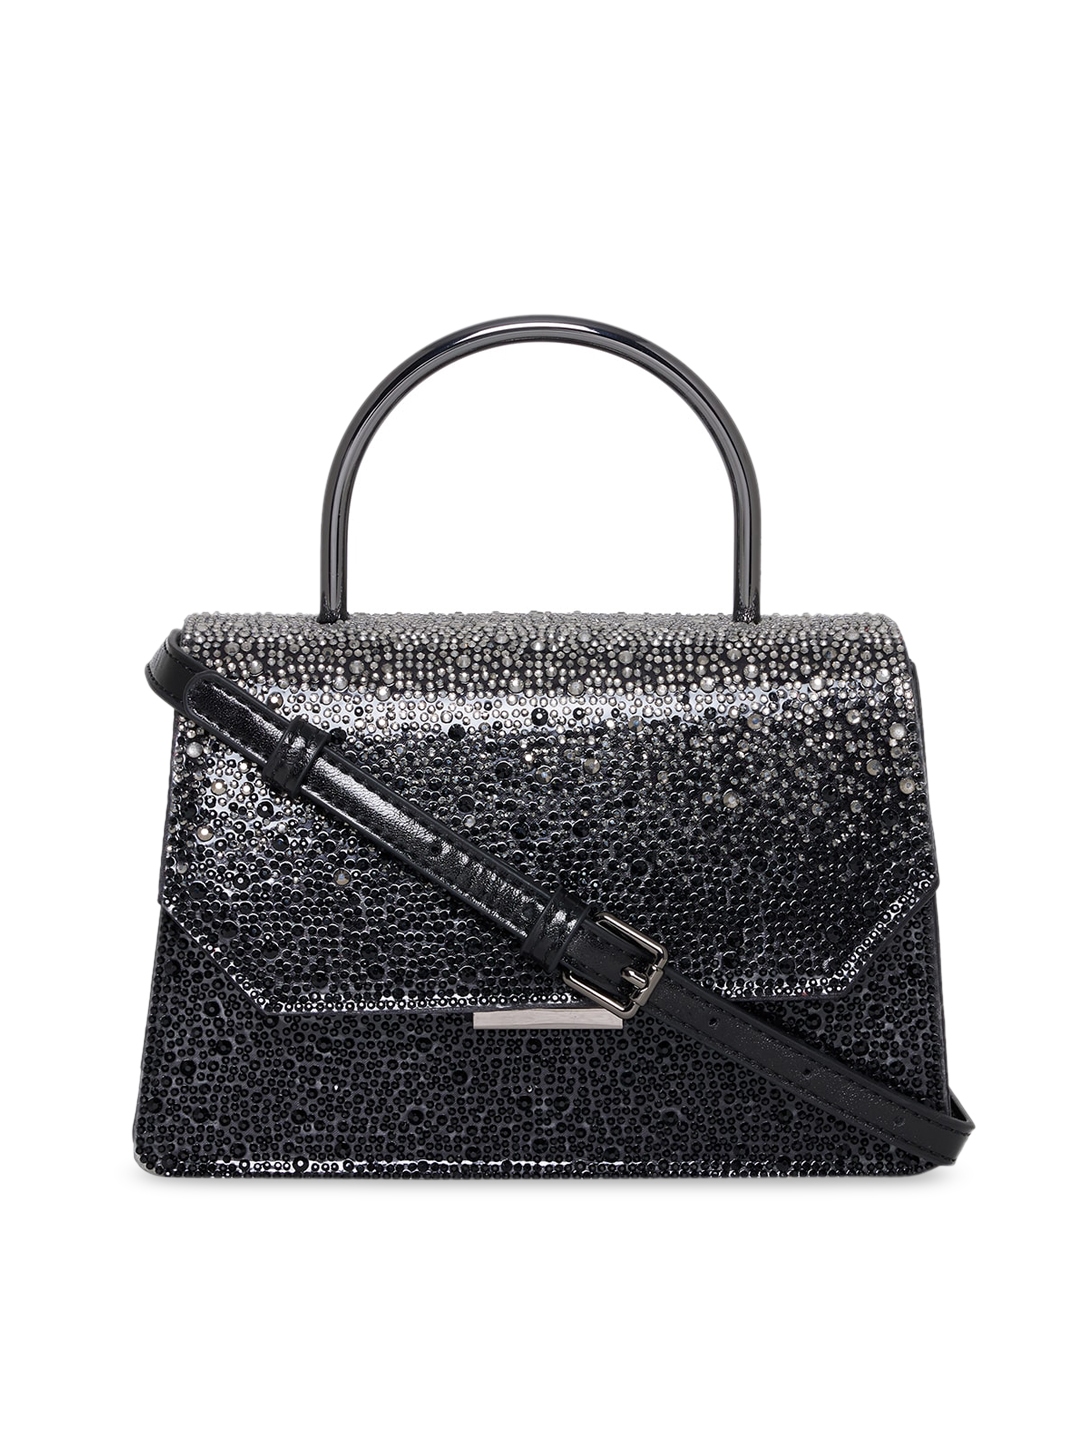 Buy ALDO Black Textured Structured Handheld Bag - Handbags for Women ...